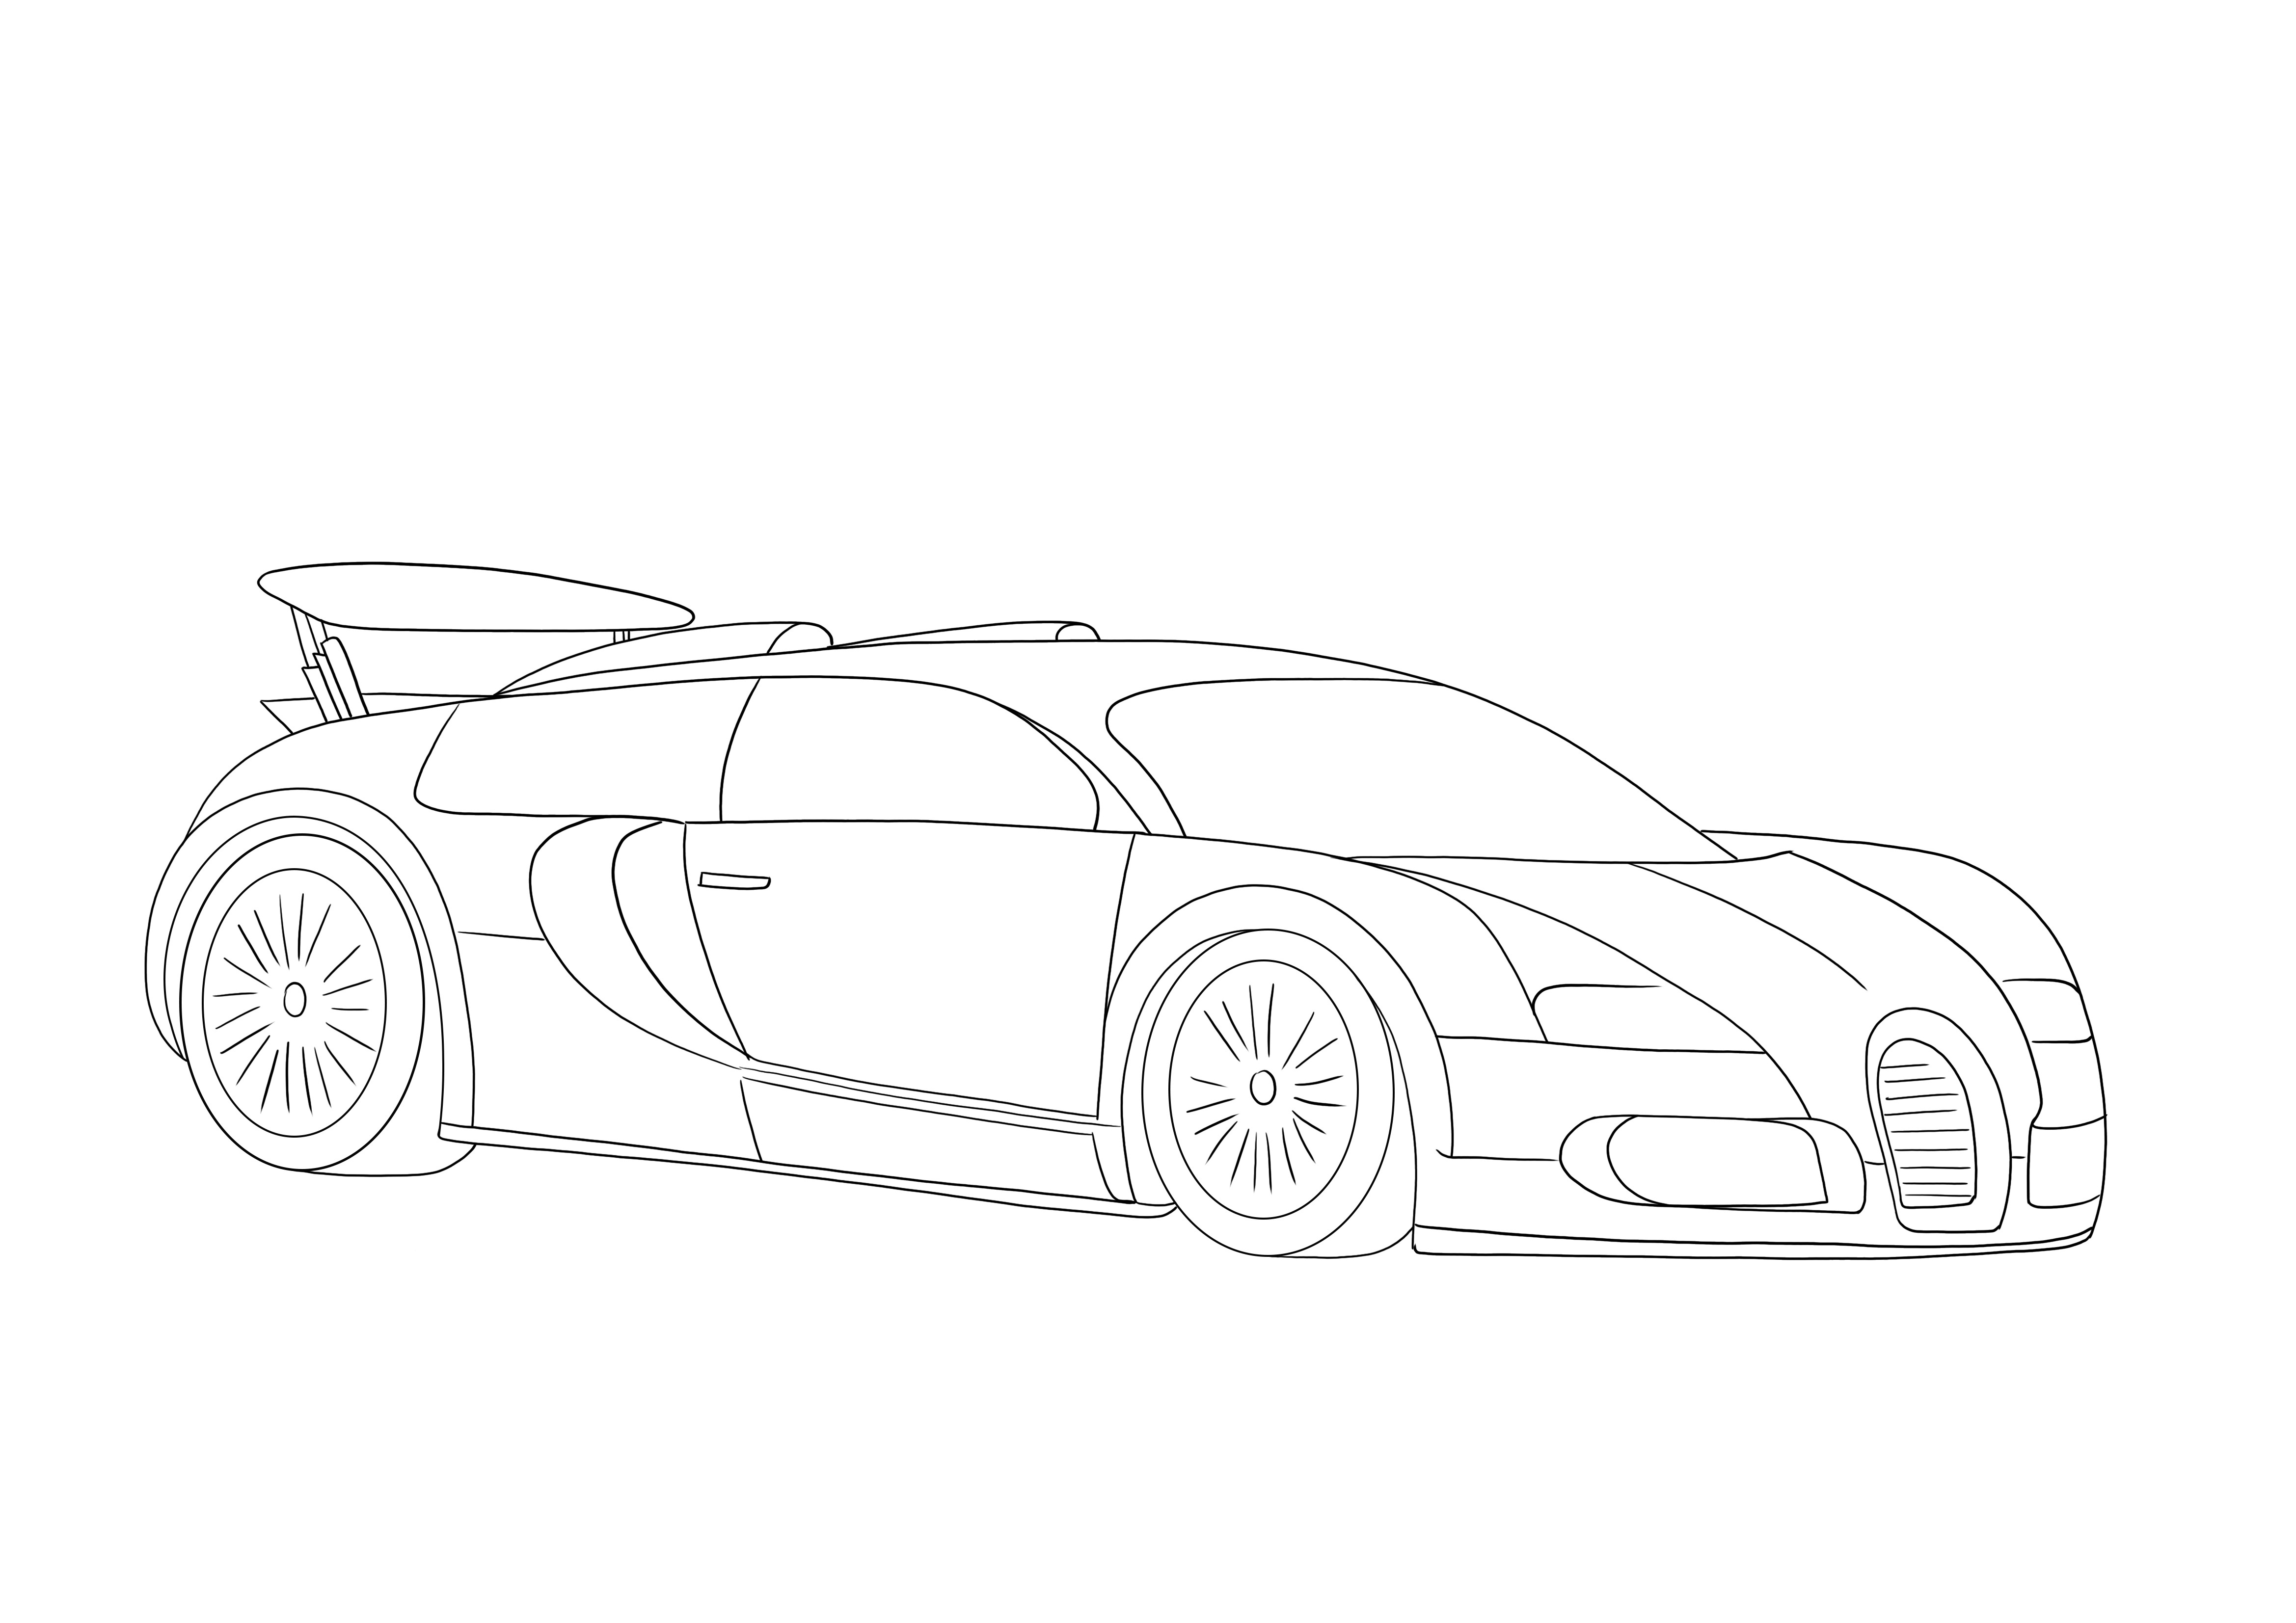 Notre super cool Bugatti Veyron 2005 est libre d'imprimer et prête à être colorée